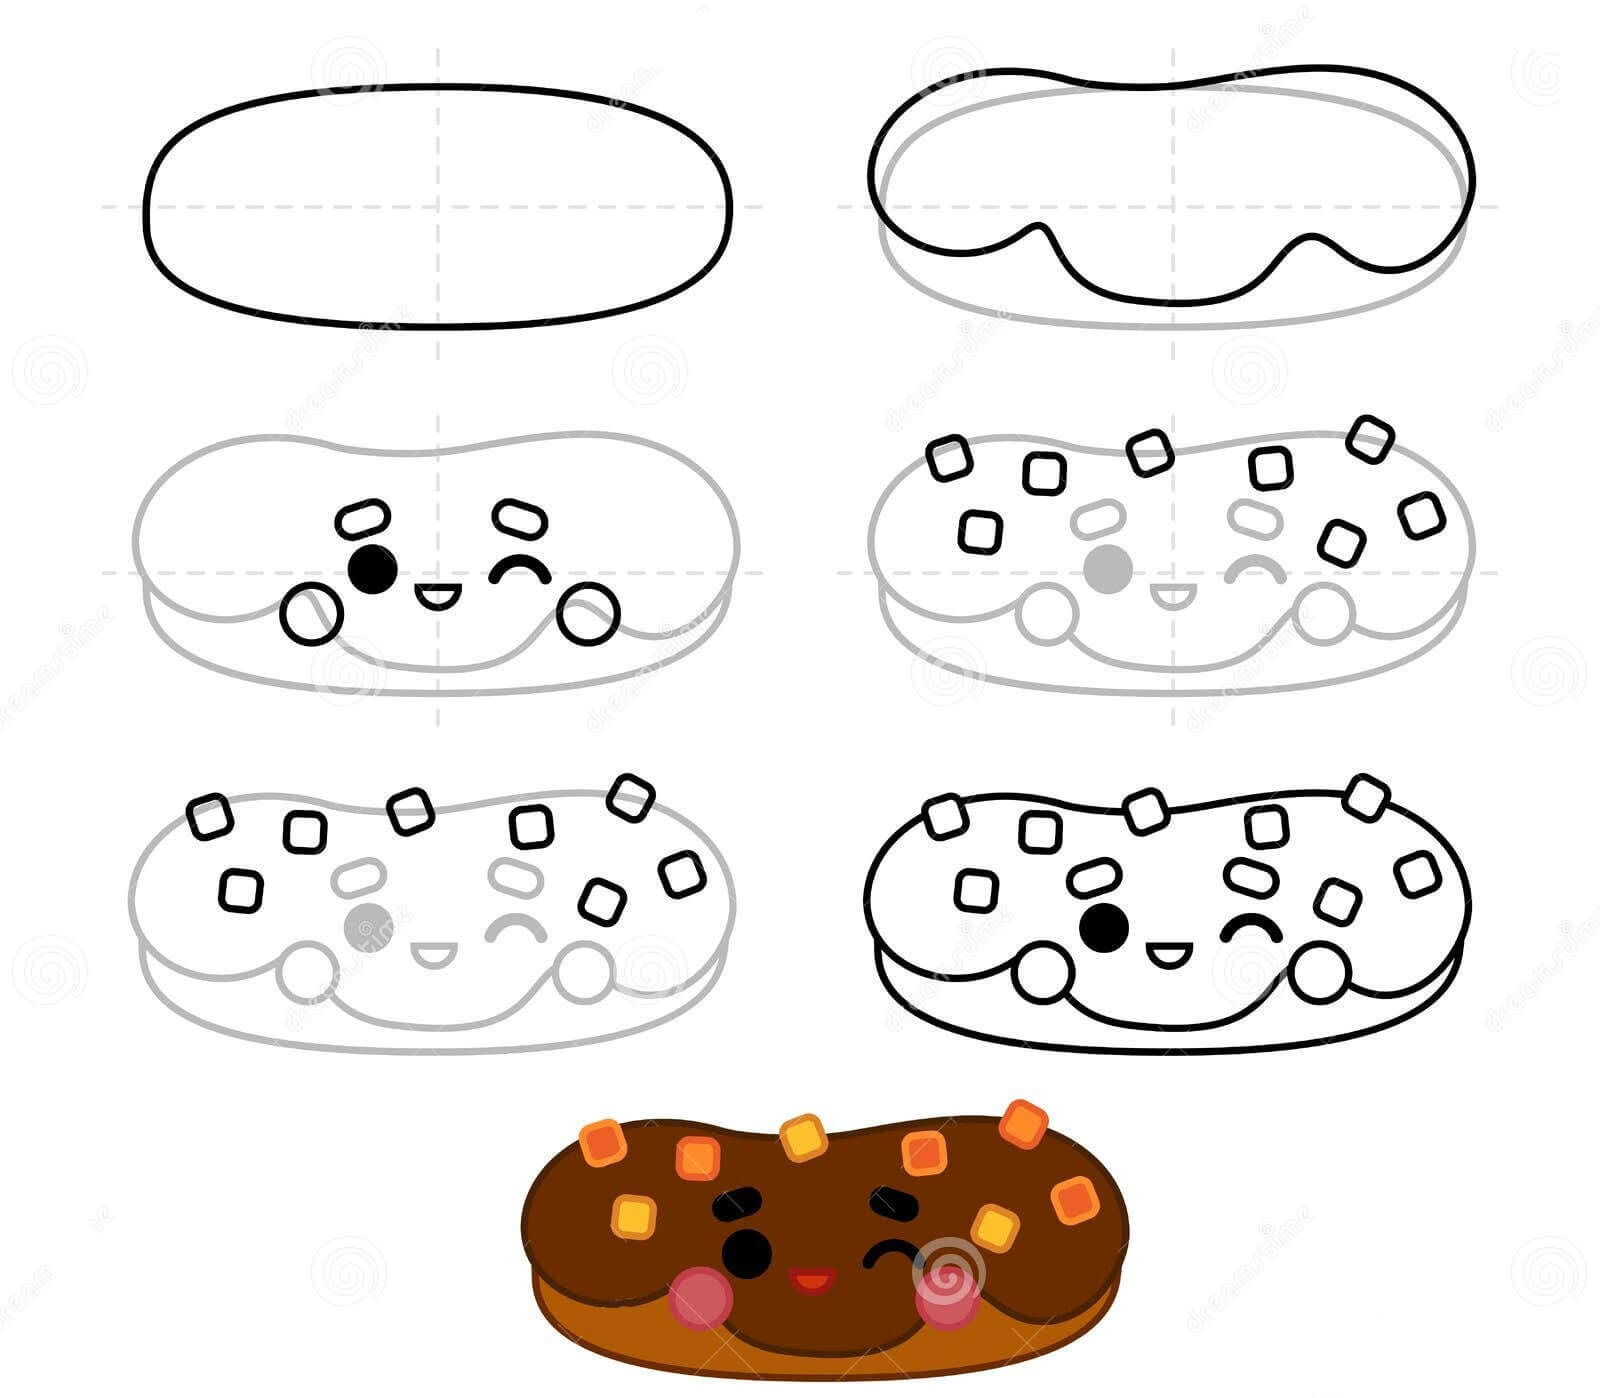 Çörek fikri (19) çizimi